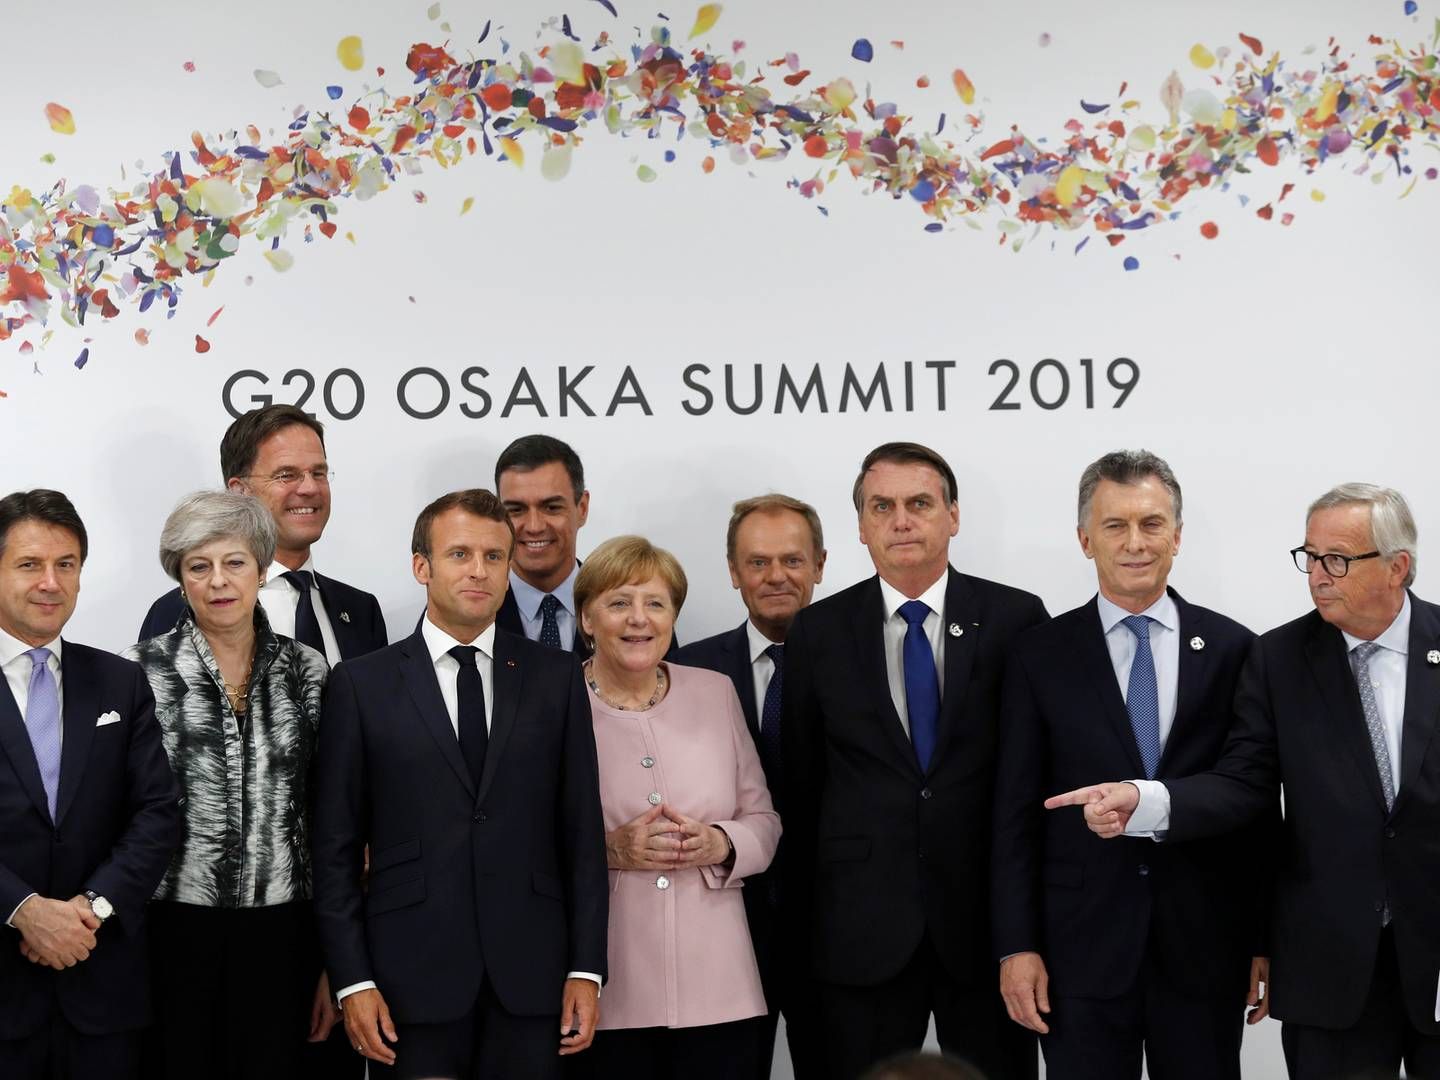 Ledere fra EU og Sydamerika mødes under G20-mødet i Osaka i Japan, 29. juni 2019. | Foto: JORGE SILVA/REUTERS / Ritzau Scanpix